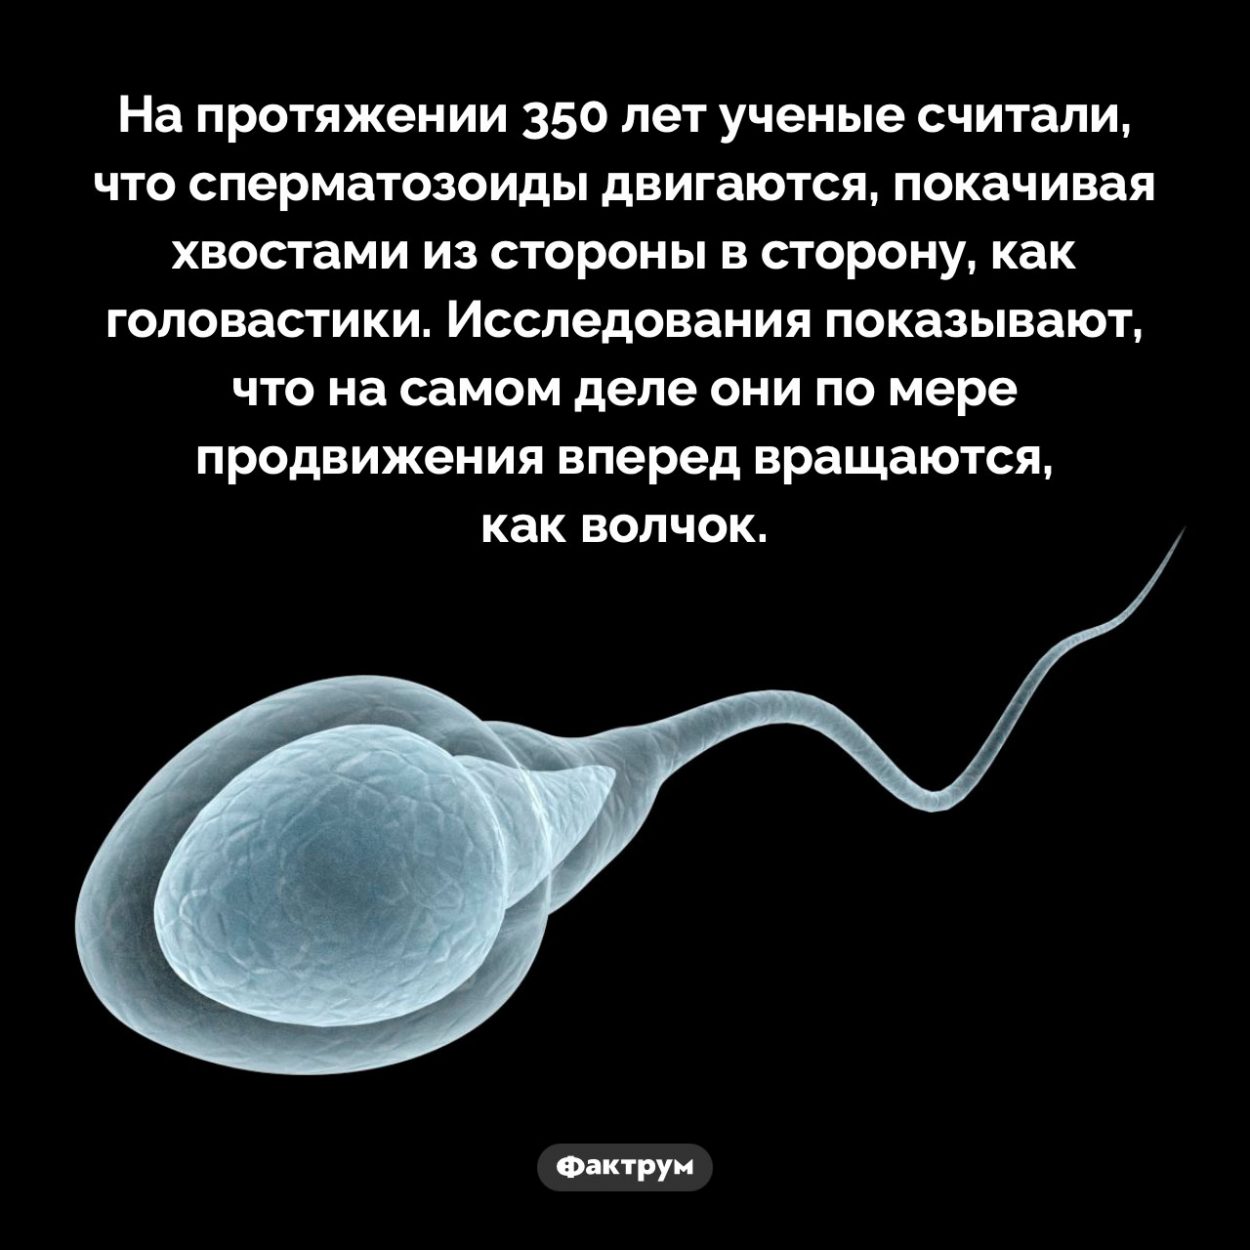 влияние на организм женский мужской спермы фото 37